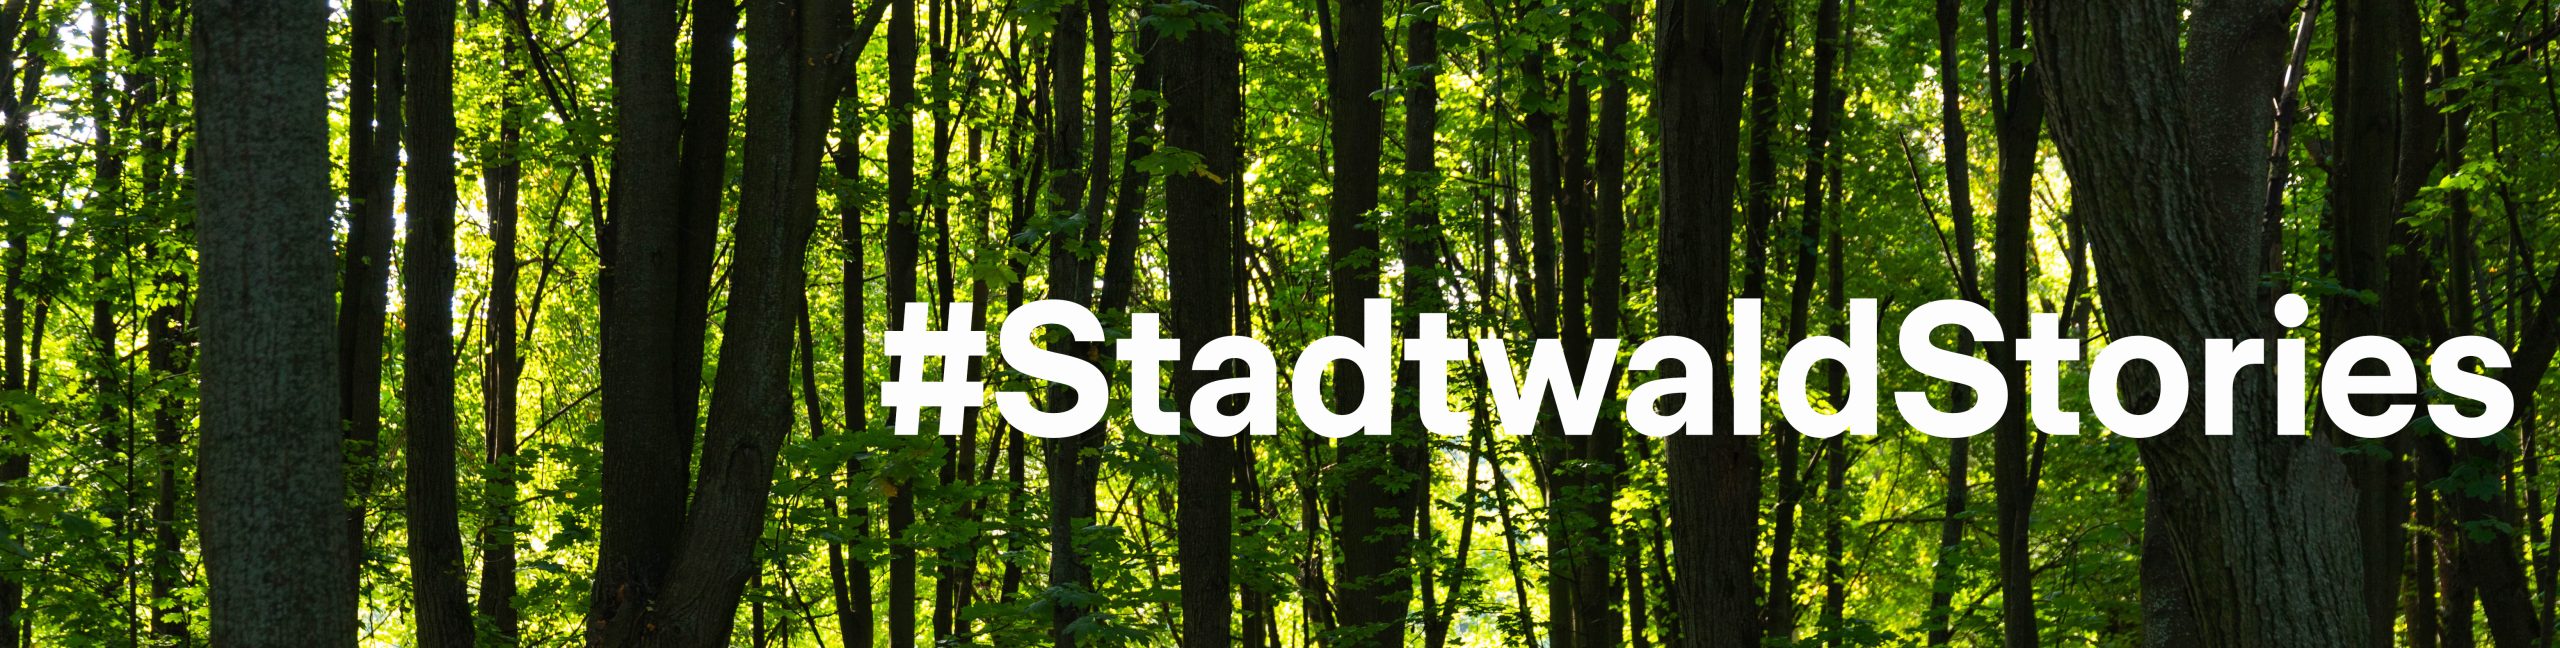 Blogbanner_StadtwaldStories